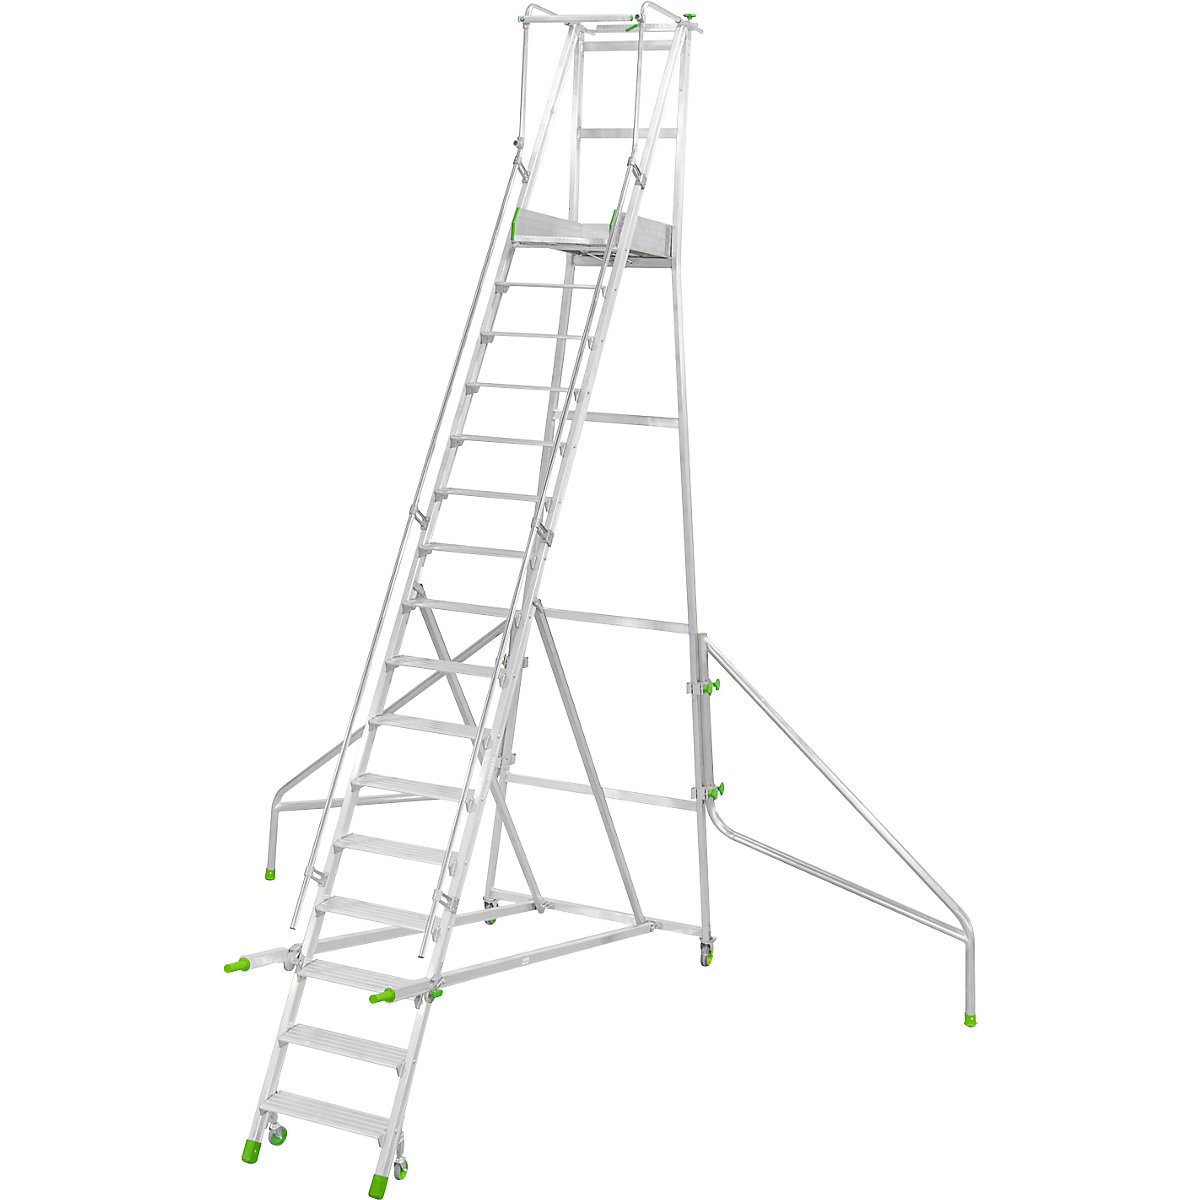 Mobile Alu-Podesttreppe, klappbar, mit gerieften Aluminiumstufen, 16 Stufen inkl. Plattform